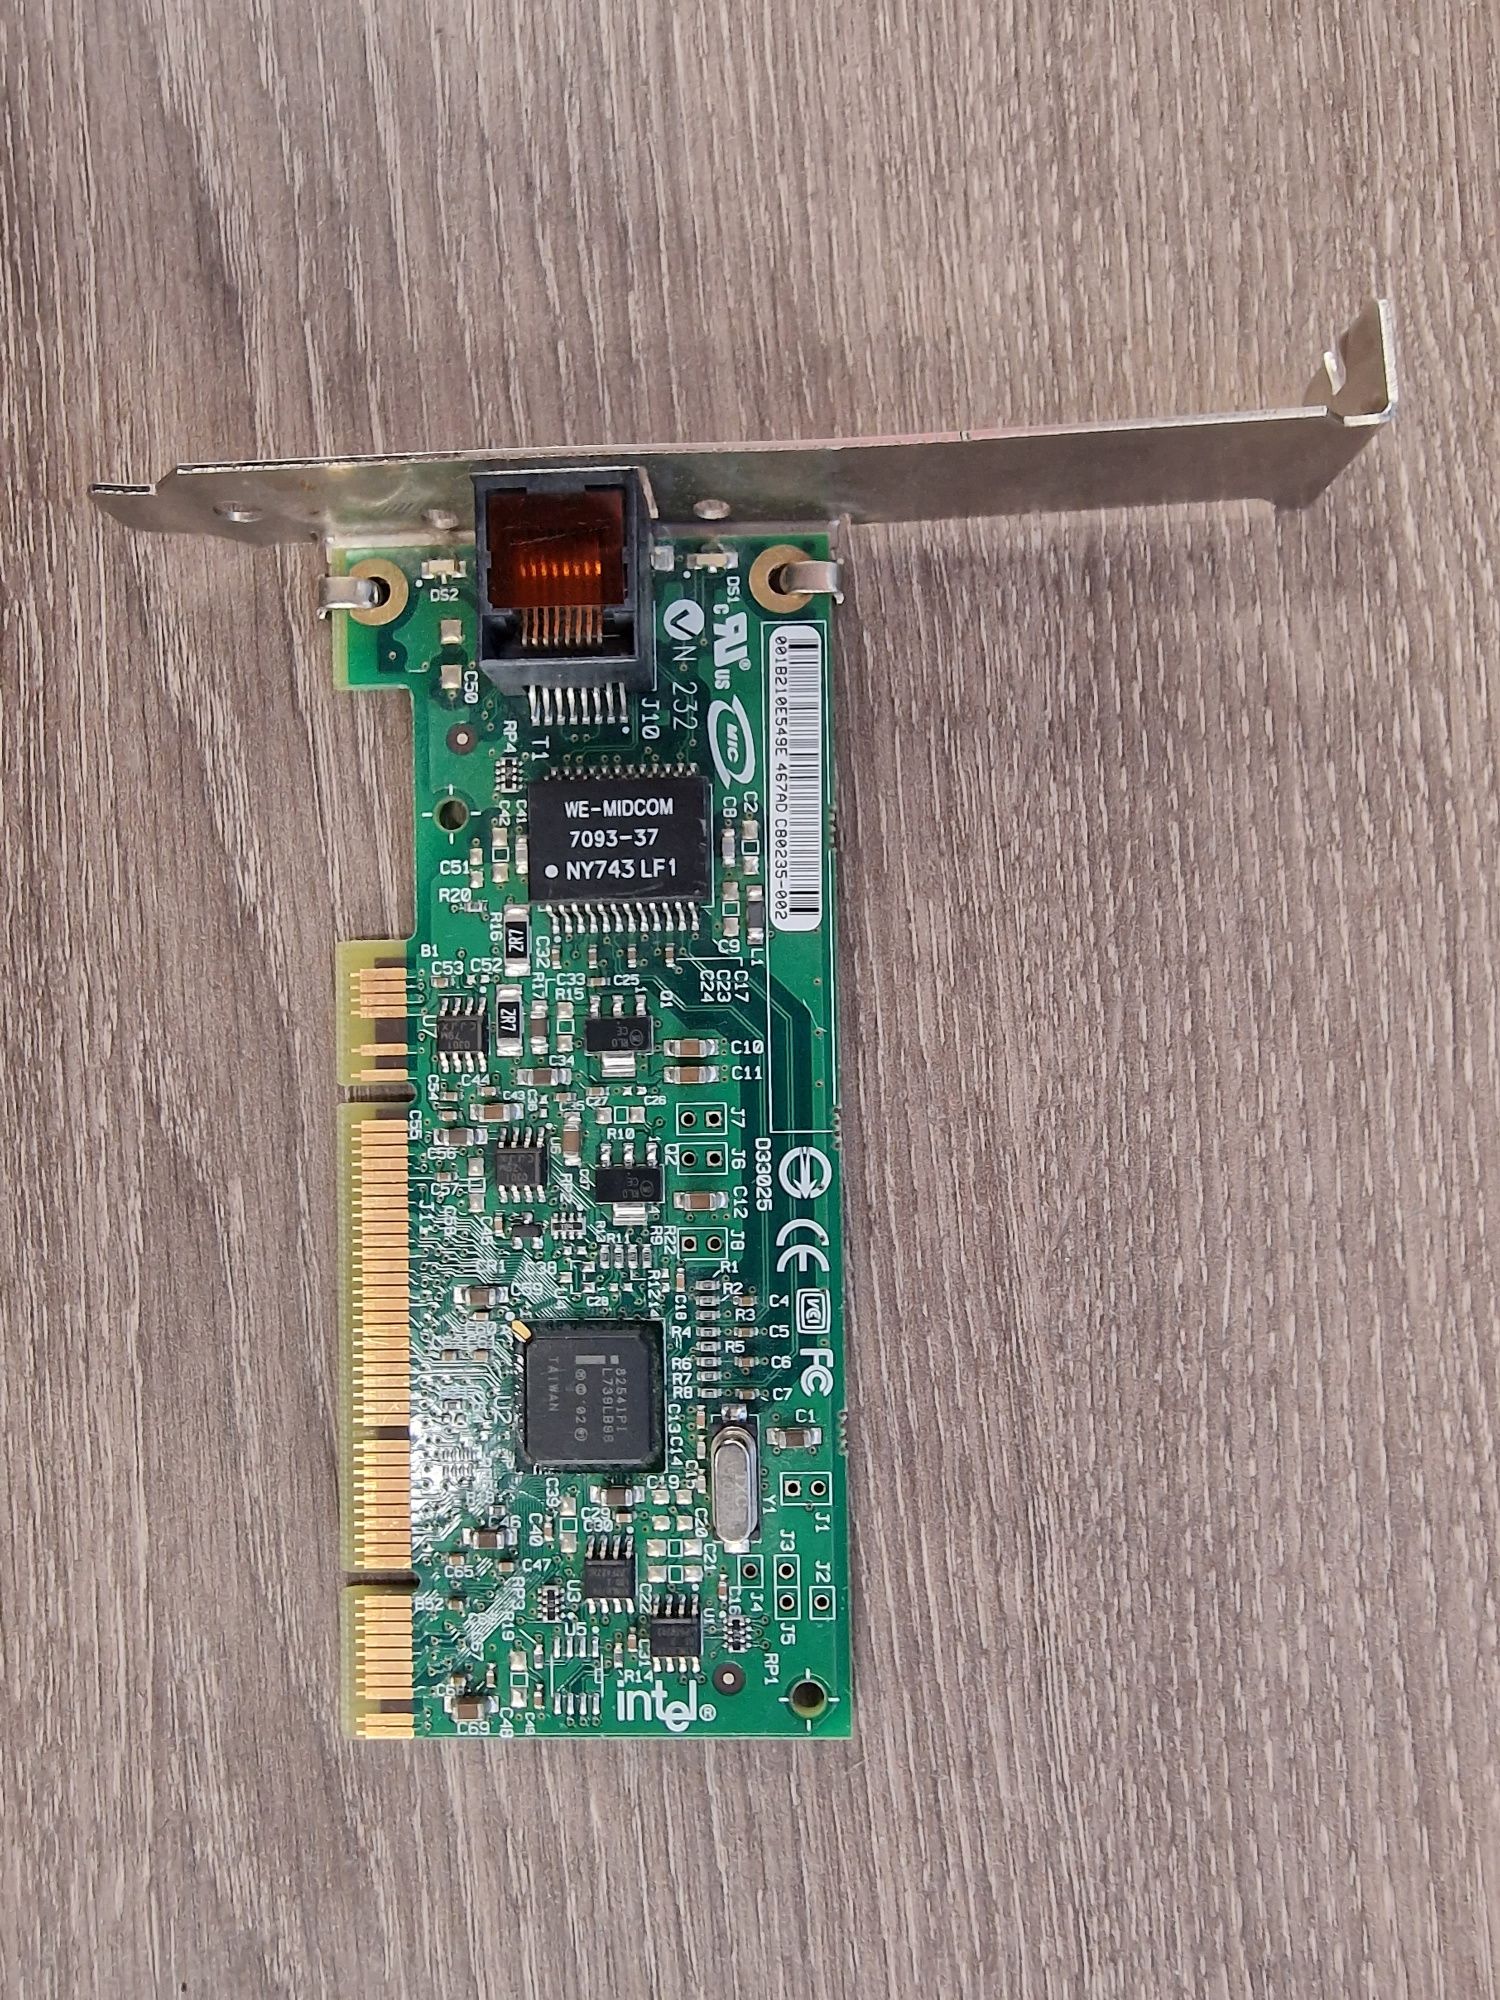 Vand placi de retea gigabit, PCI